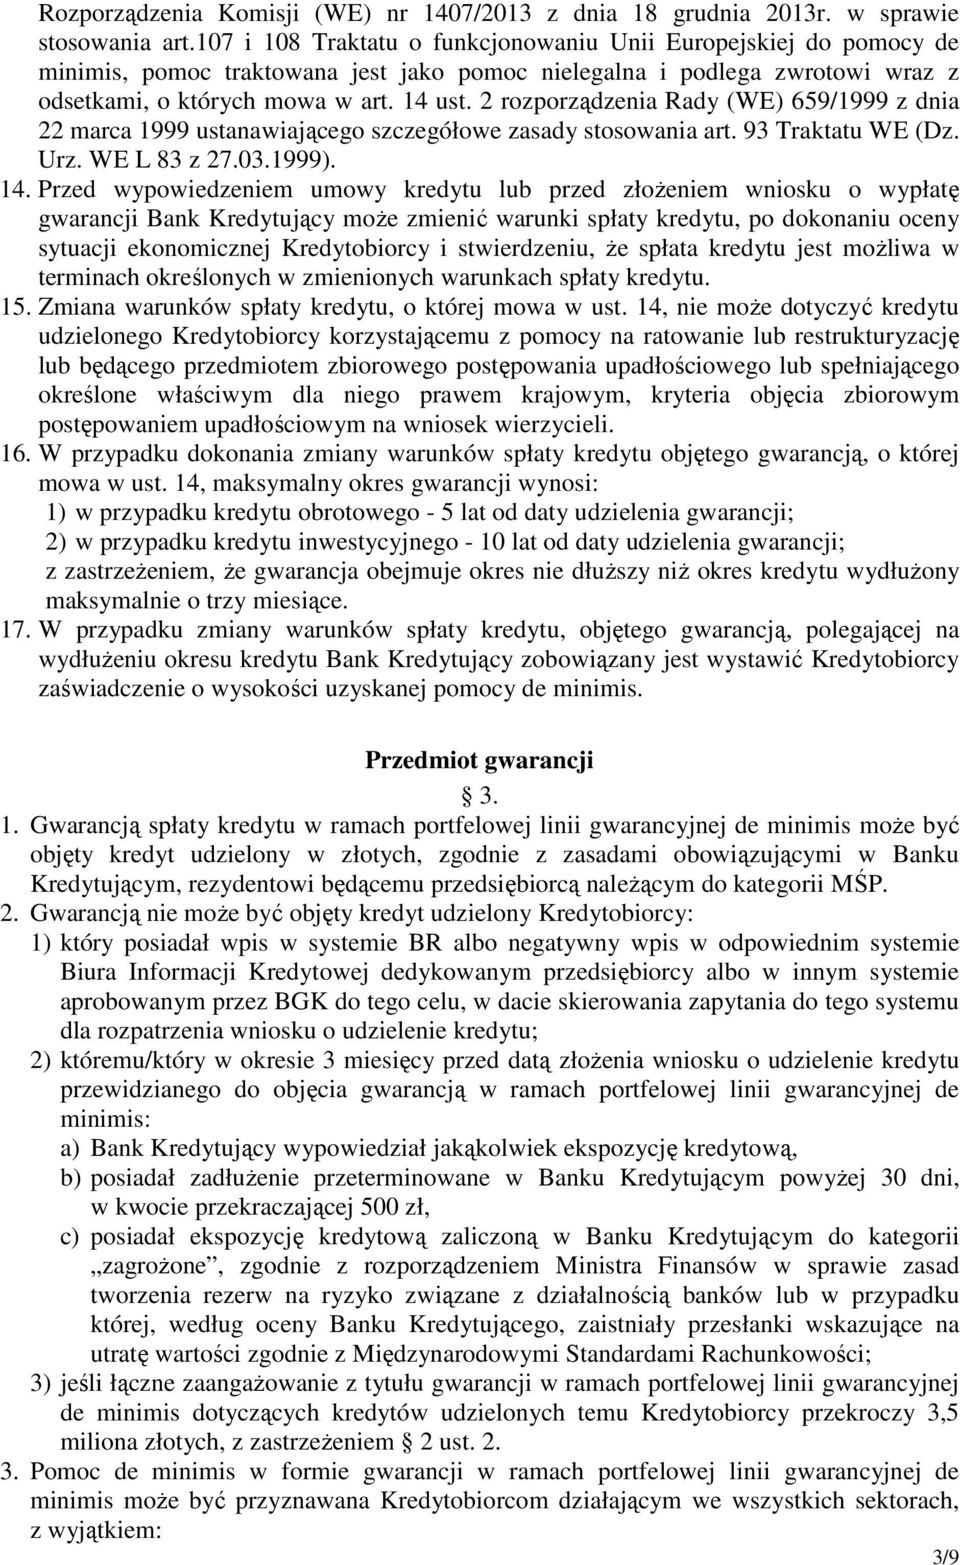 2 rozporządzenia Rady (WE) 659/1999 z dnia 22 marca 1999 ustanawiającego szczegółowe zasady stosowania art. 93 Traktatu WE (Dz. Urz. WE L 83 z 27.03.1999). 14.